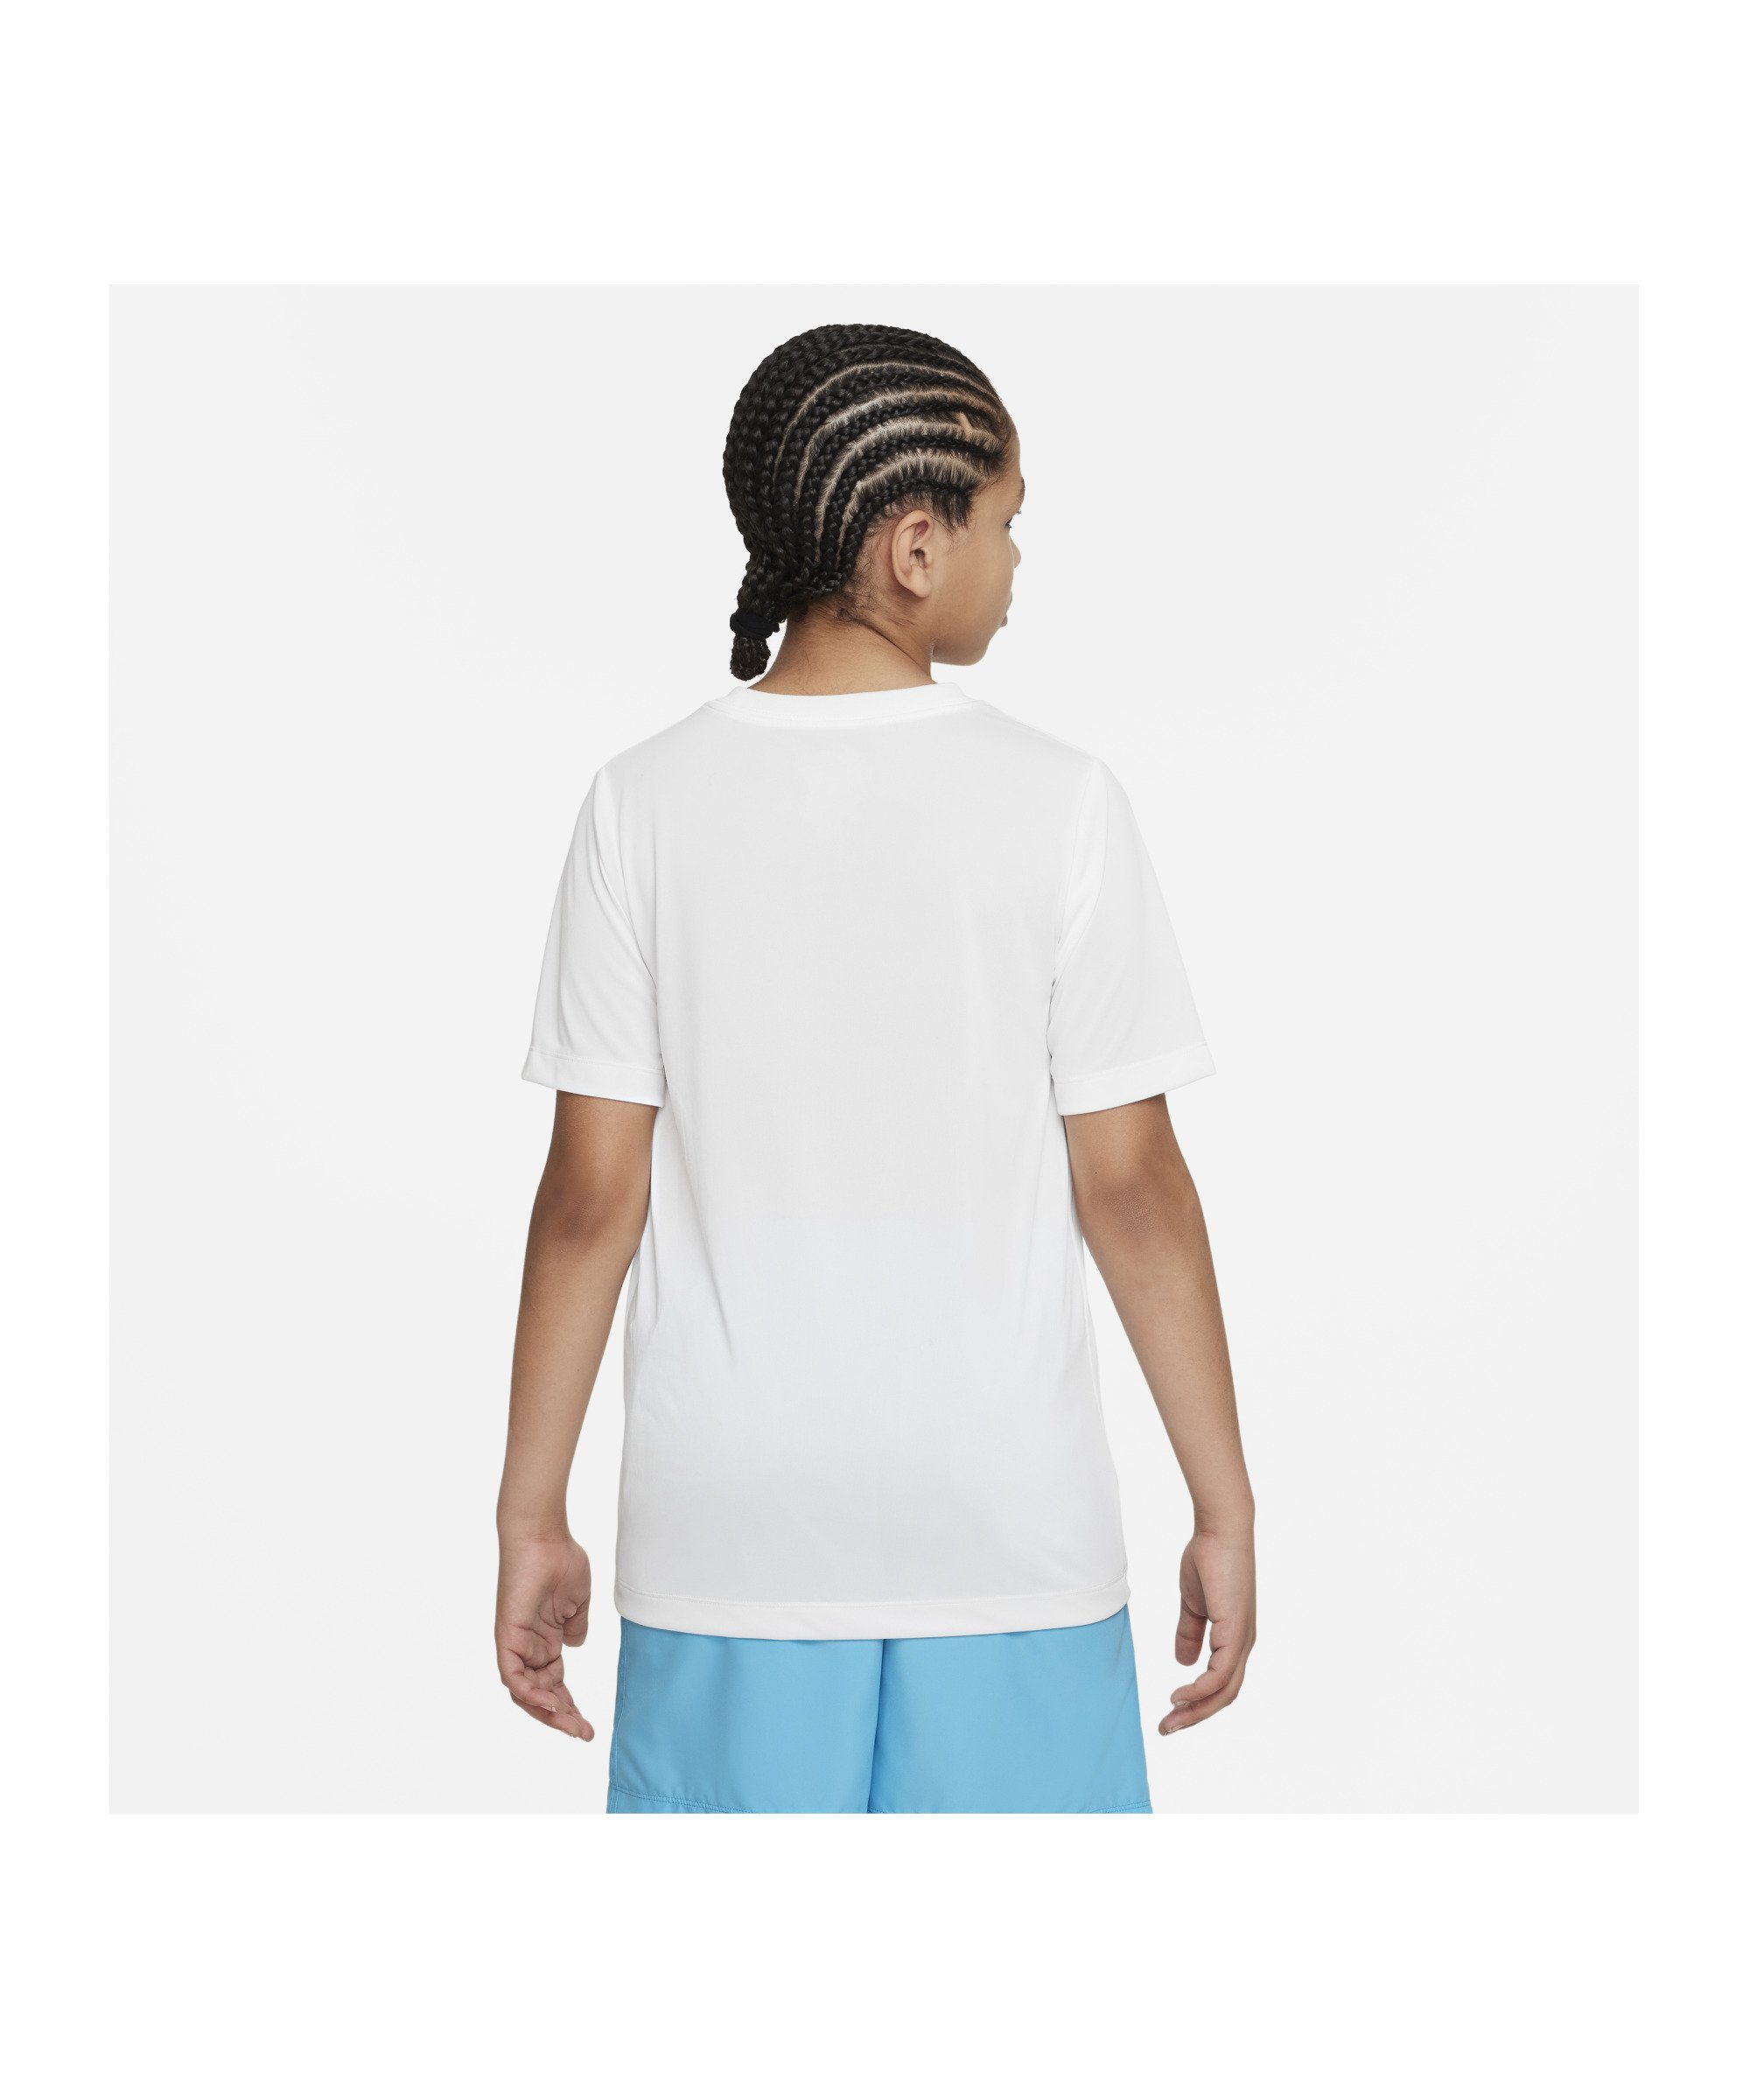 Nike weiss T-Shirt Laufshirt Kids Training default